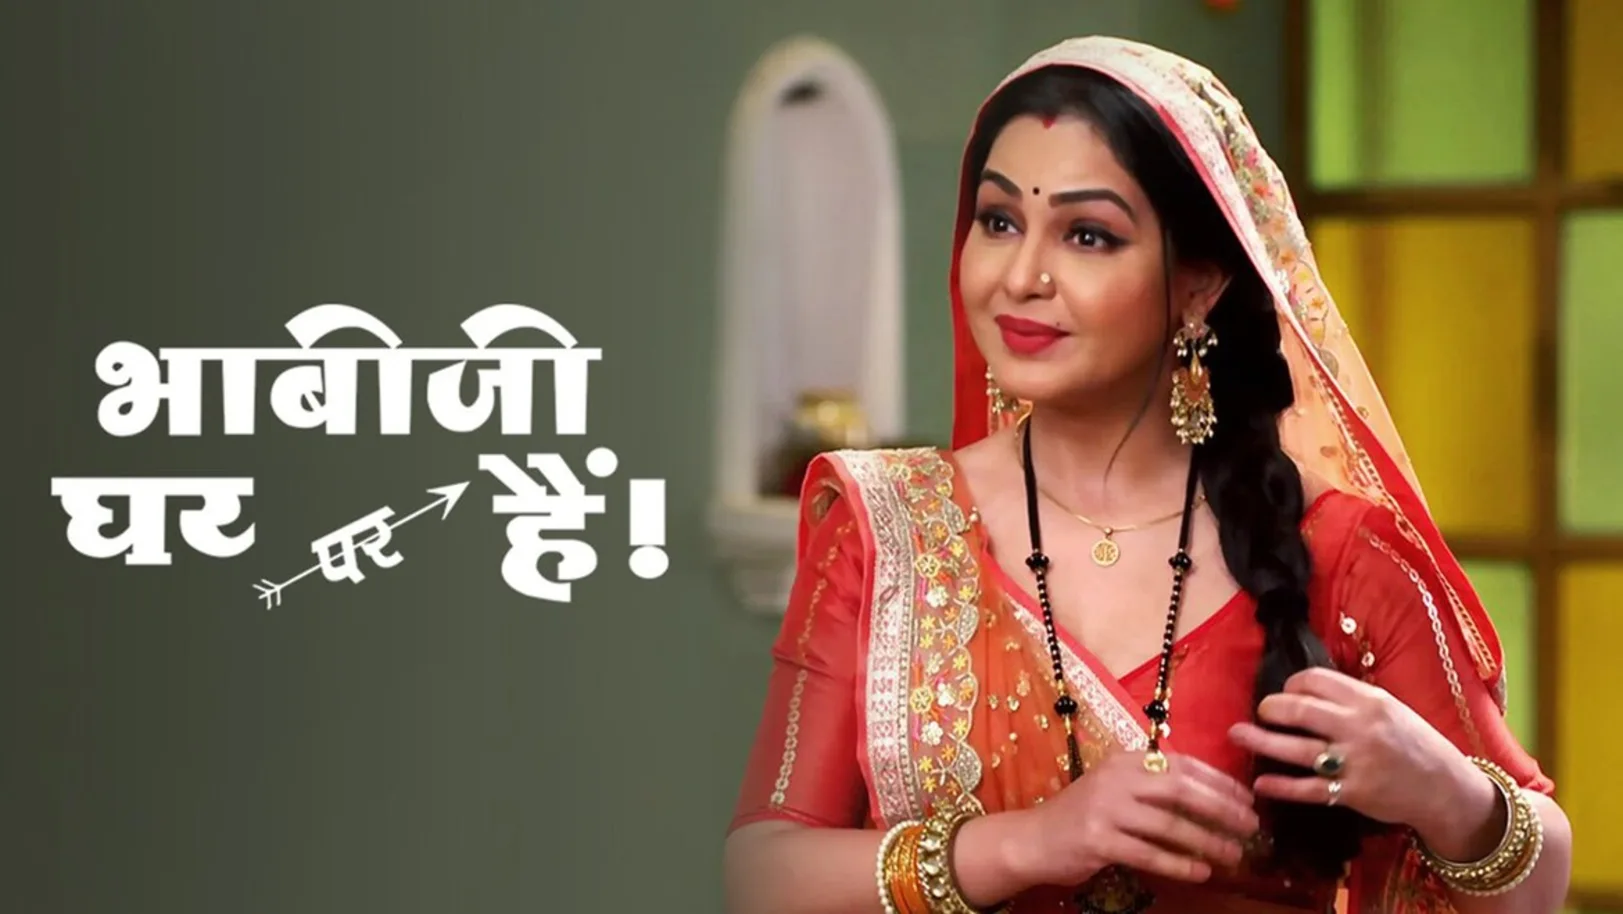 Bhabi Ji Ghar Par Hain! Streaming Now On Zee TV APAC